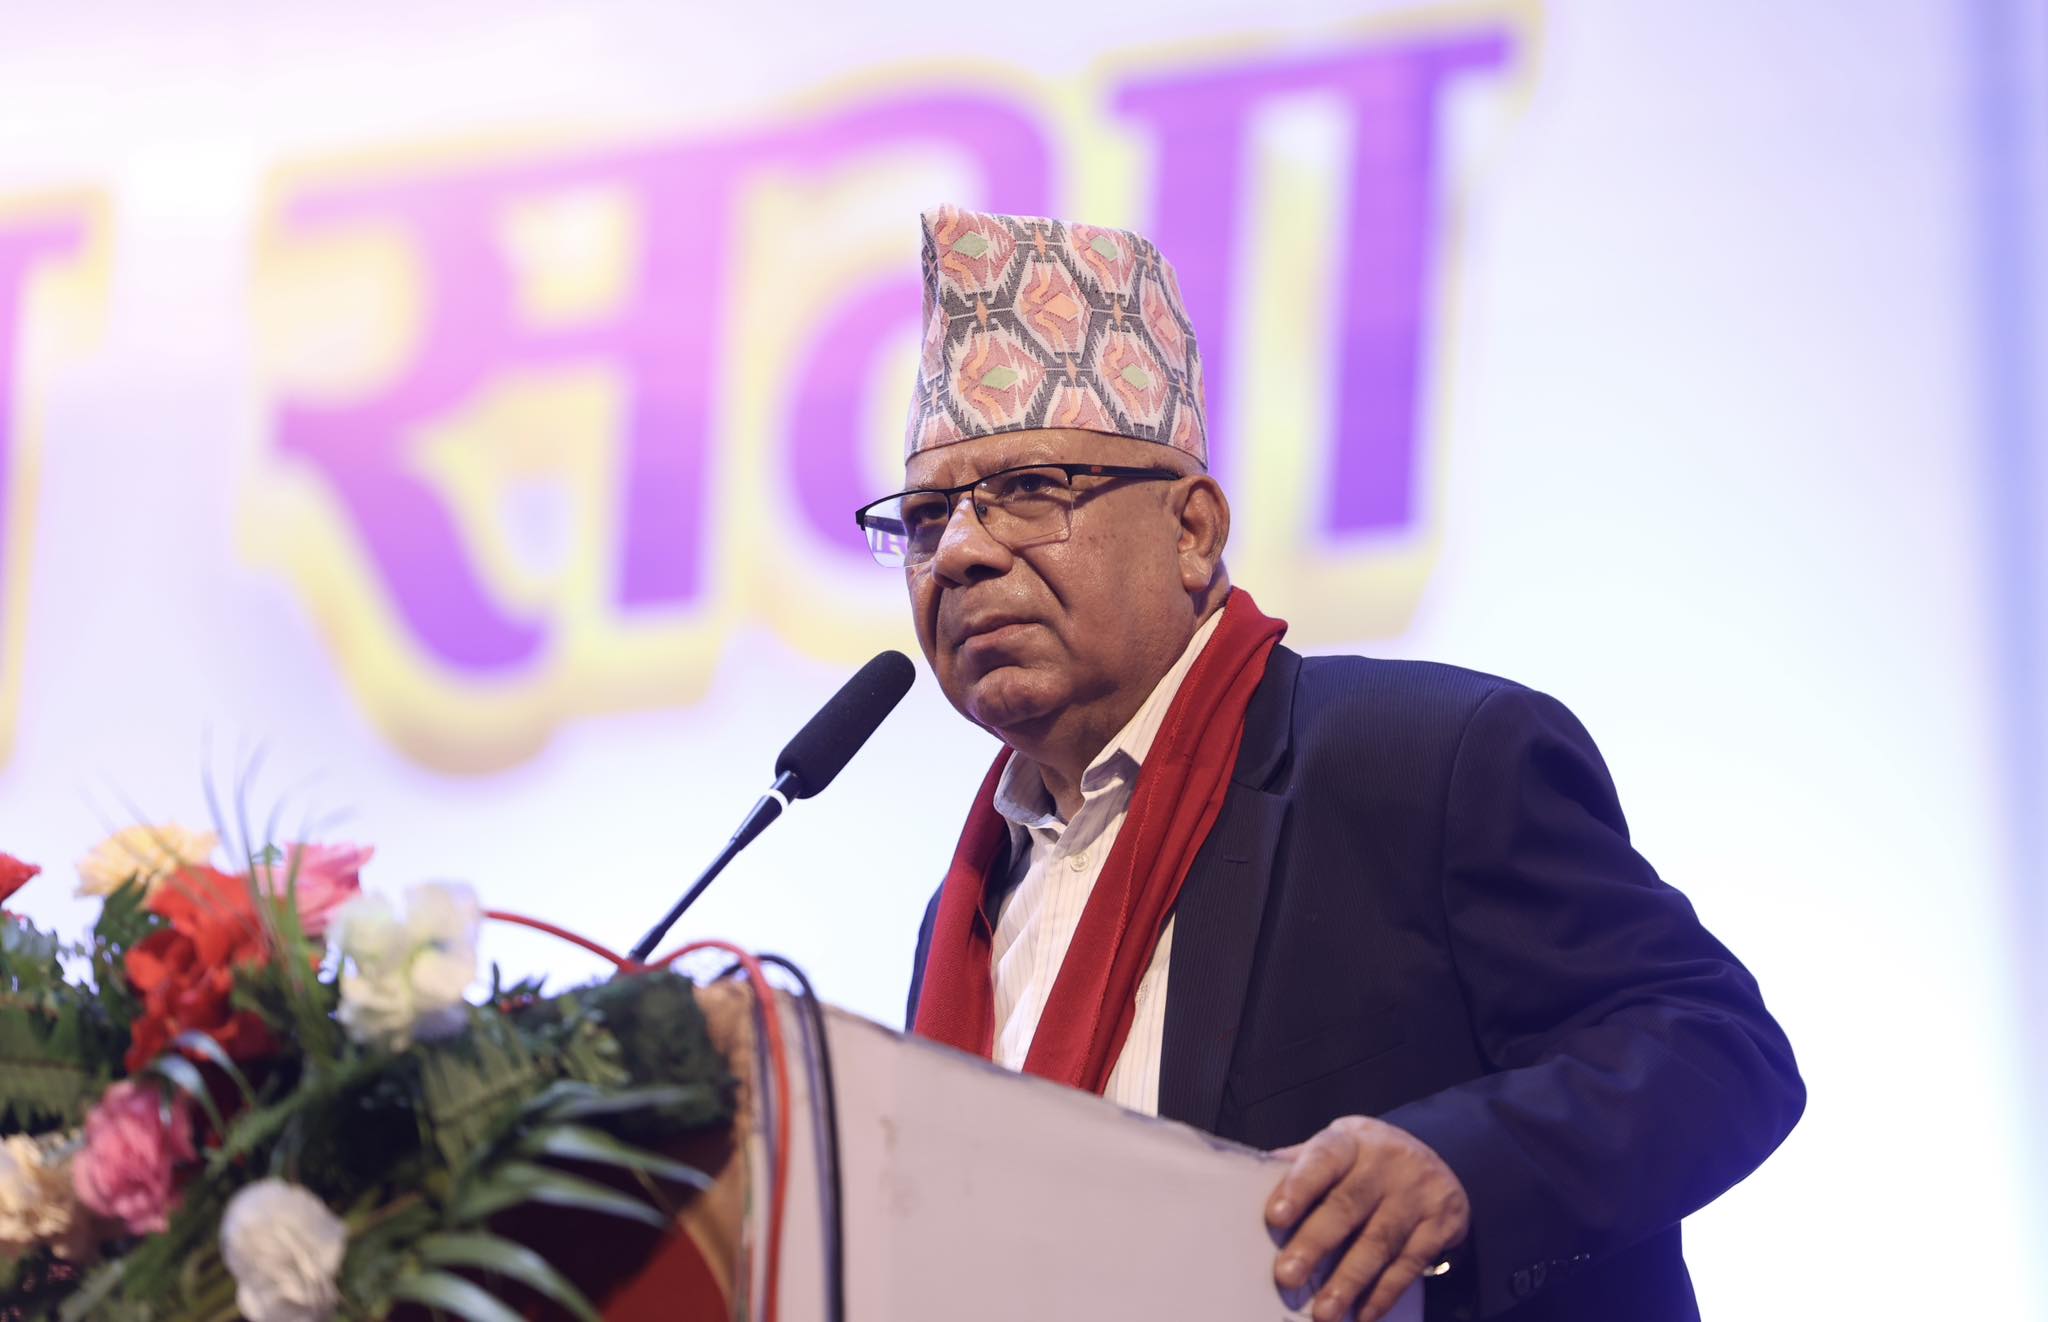 संवैधानिक अधिकार सुनिश्चितता गर्नुपर्छ : अध्यक्ष नेपाल